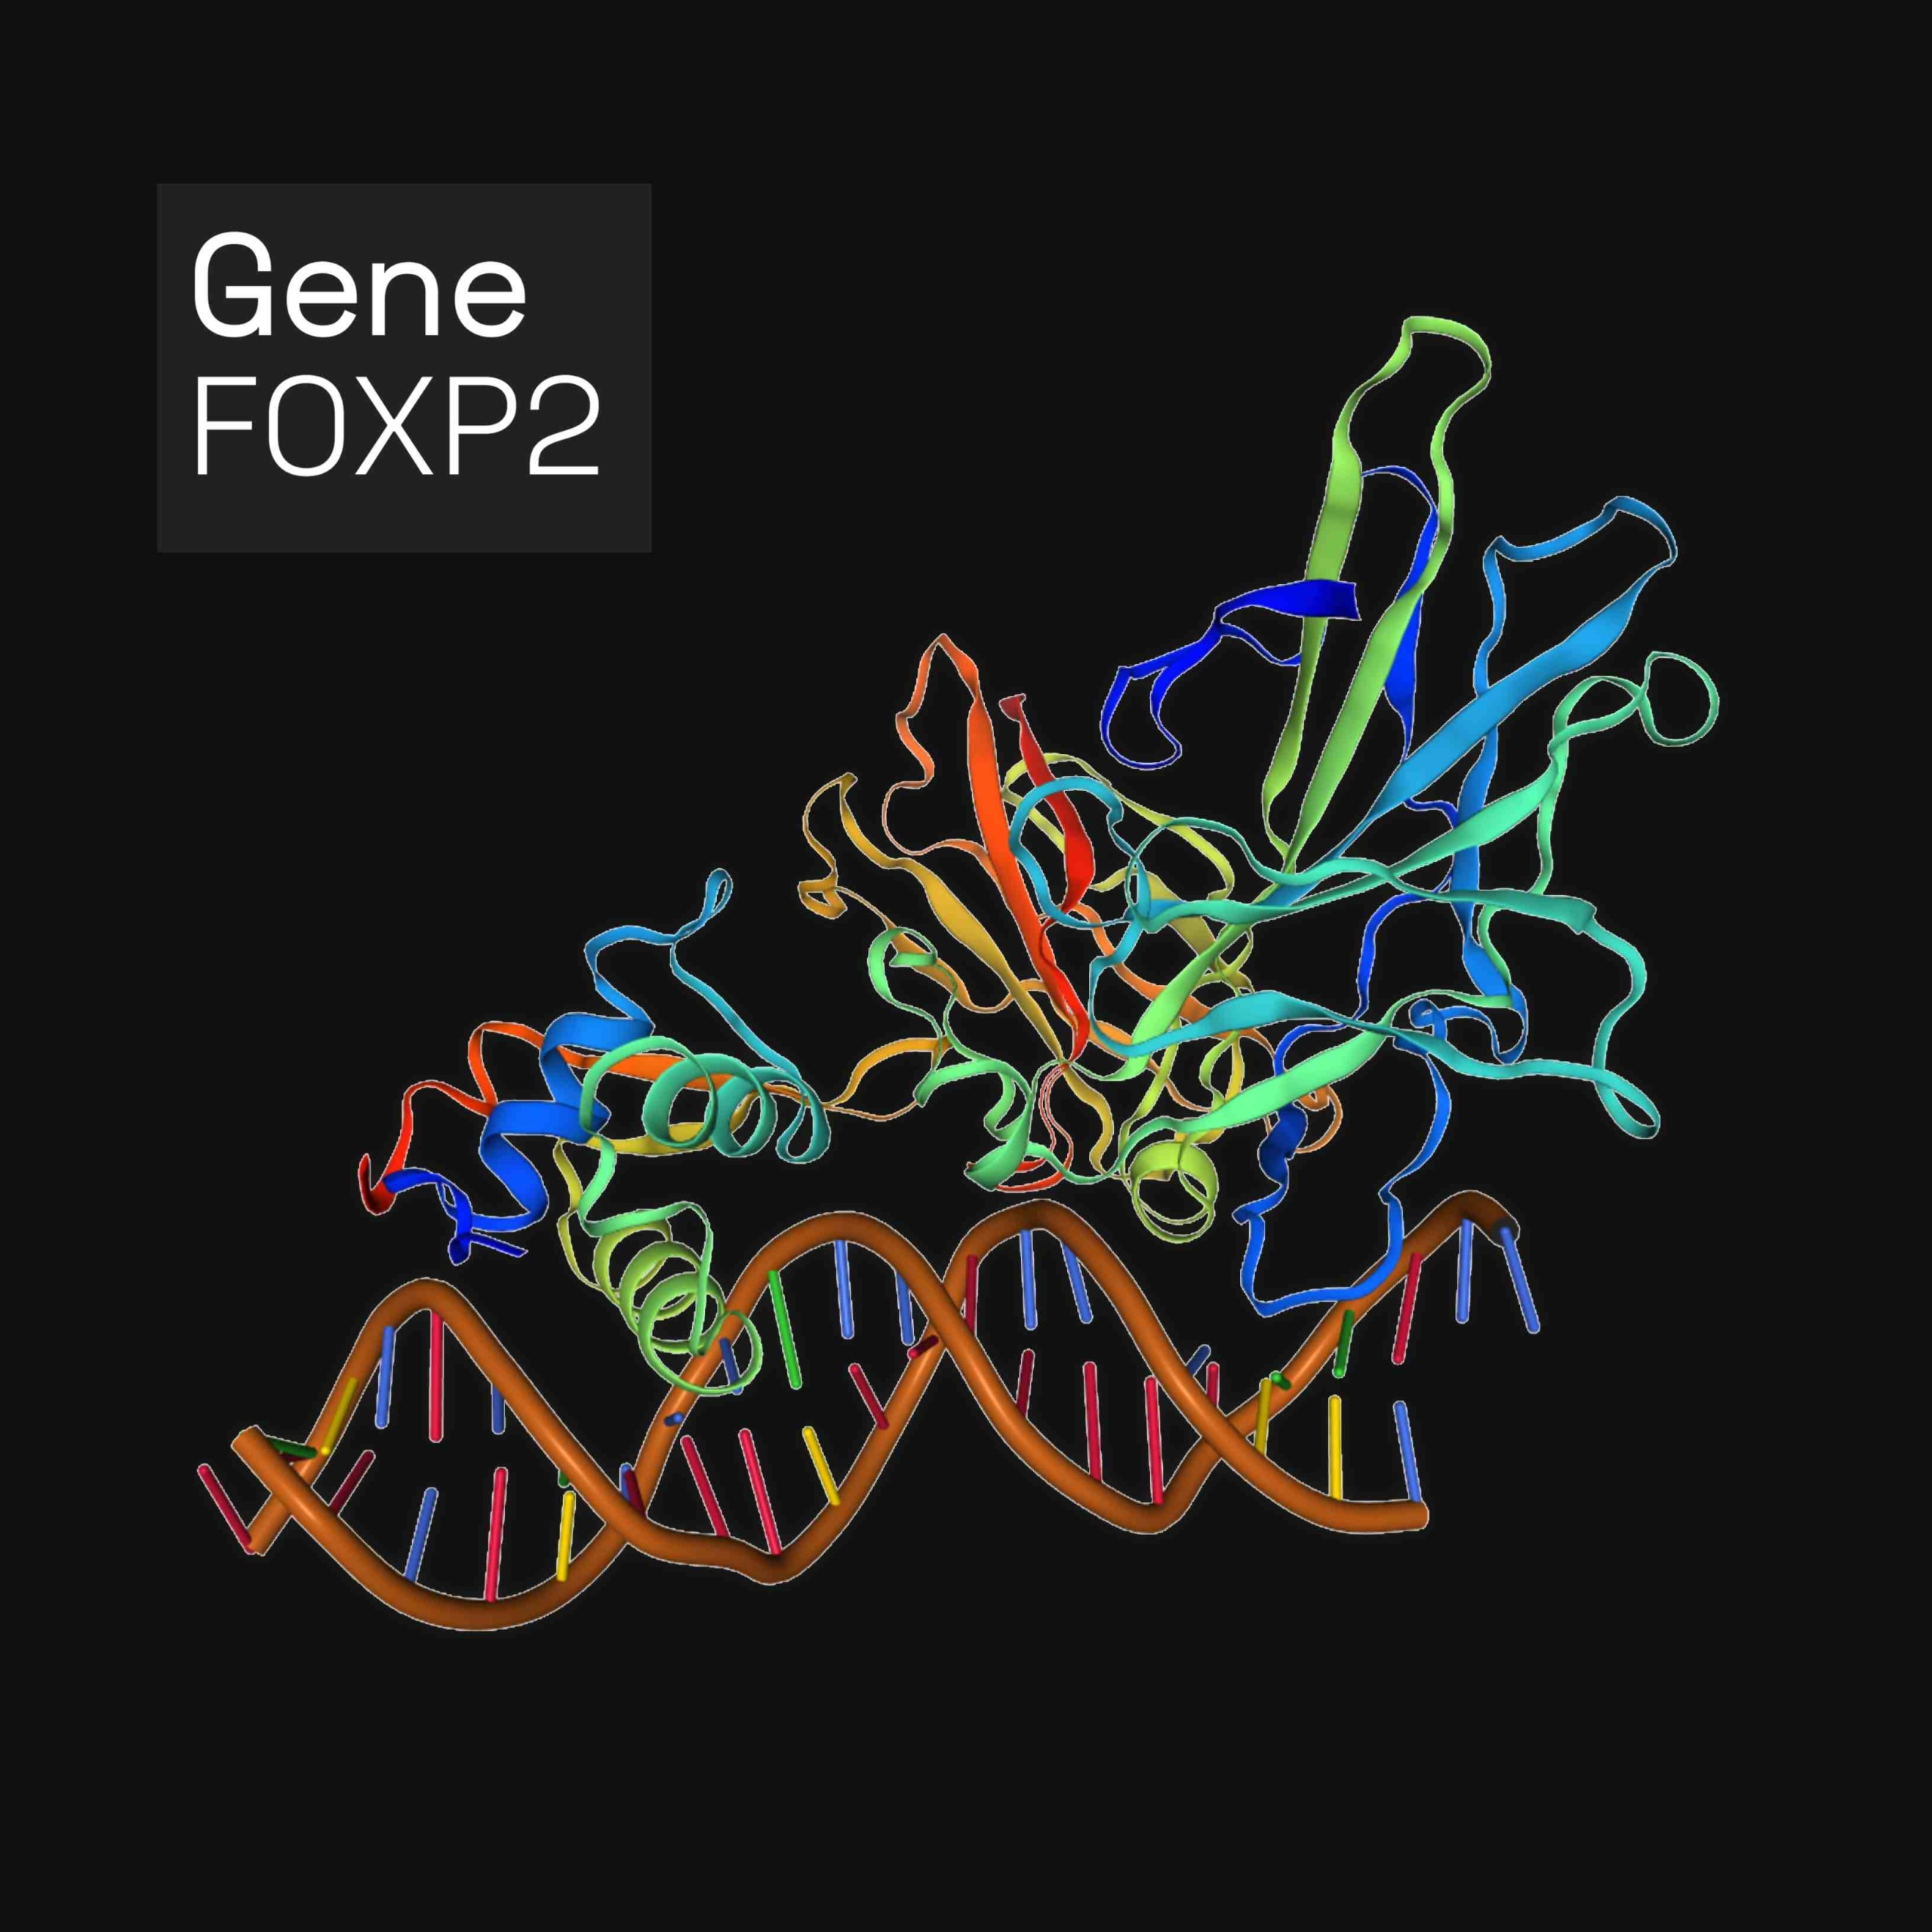 Р2 протеині (FOXP2) - адамдарда FOXP2 генімен кодталған ақуыз. FOXP2 – ДНҚ-мен байланысу арқылы ген экспрессиясын реттейтін белоктар, транскрипция факторларының шанышқы қорабының мүшесі. Ол мида, жүректе, өкпеде және ас қорыту жүйесінде көрінеді.